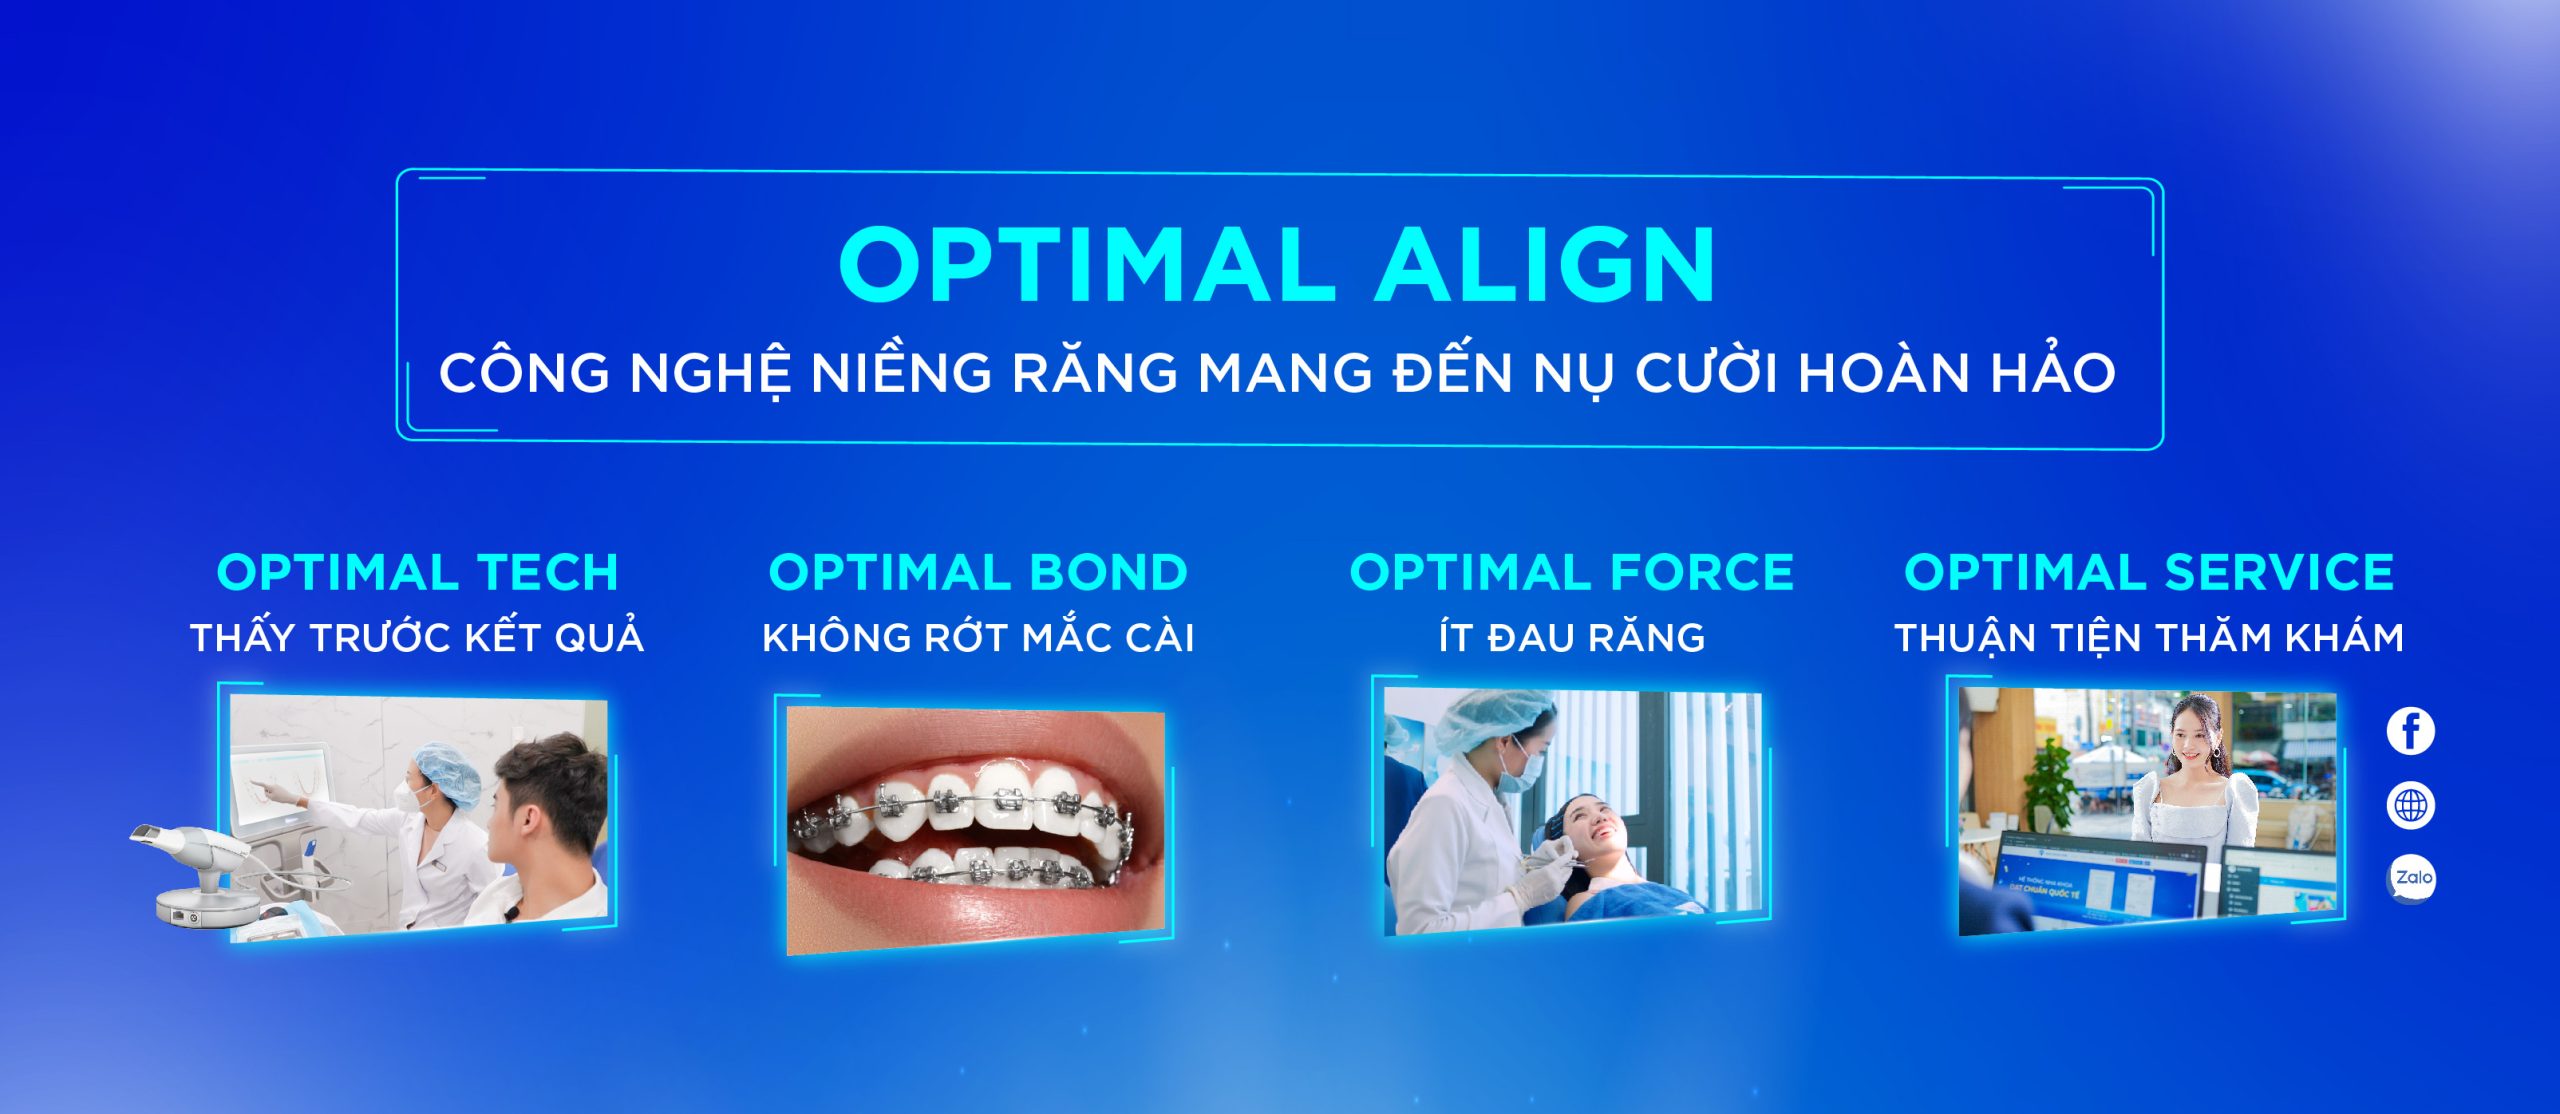 [Top Banner Mobile] Trước và sau khi niềng răng thay đổi tích cực và tiêu cực ra sao?